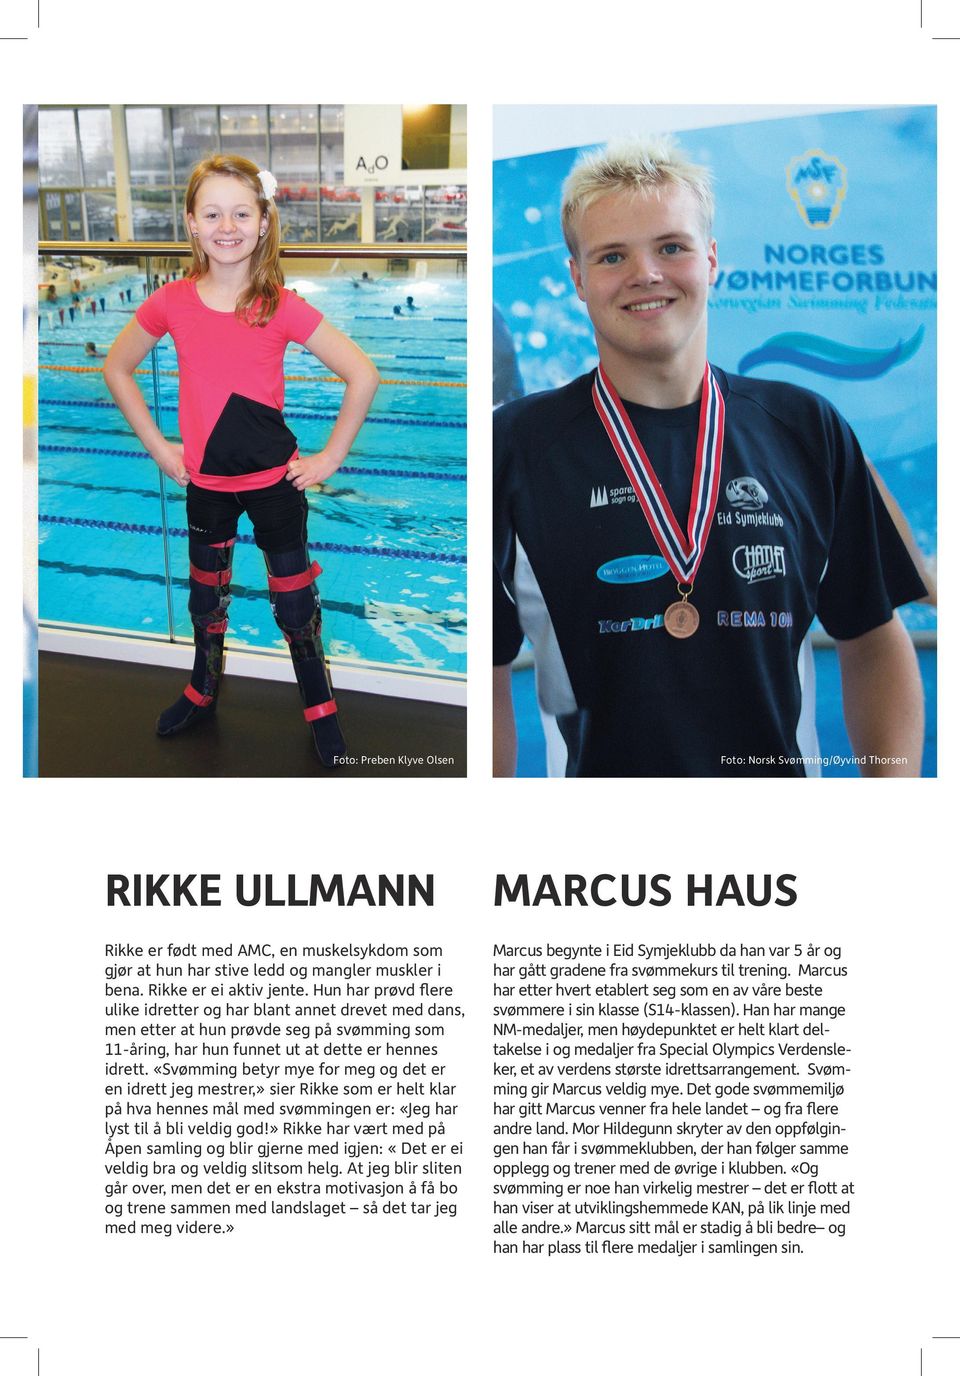 «Svømming betyr mye for meg og det er en idrett jeg mestrer,» sier Rikke som er helt klar på hva hennes mål med svømmingen er: «Jeg har lyst til å bli veldig god!